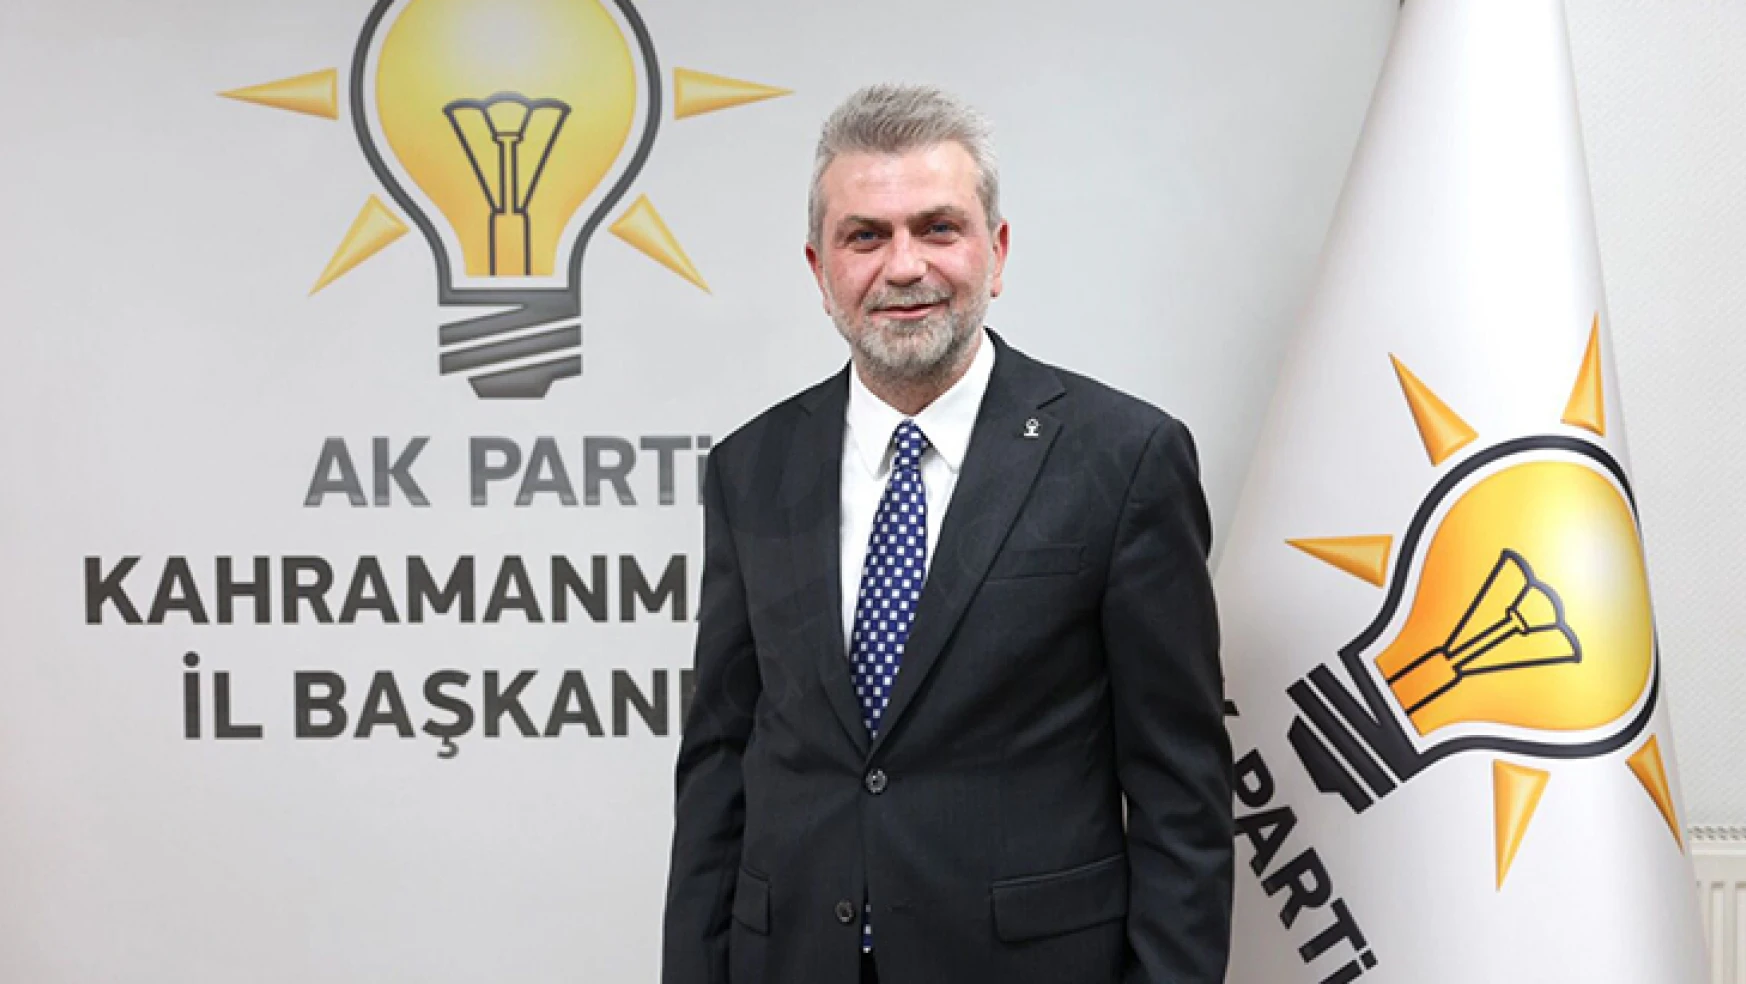 AK Parti İl Başkanı Görgel: Türkiye'nin geleceğini şekillendireceğimize inancımız tam